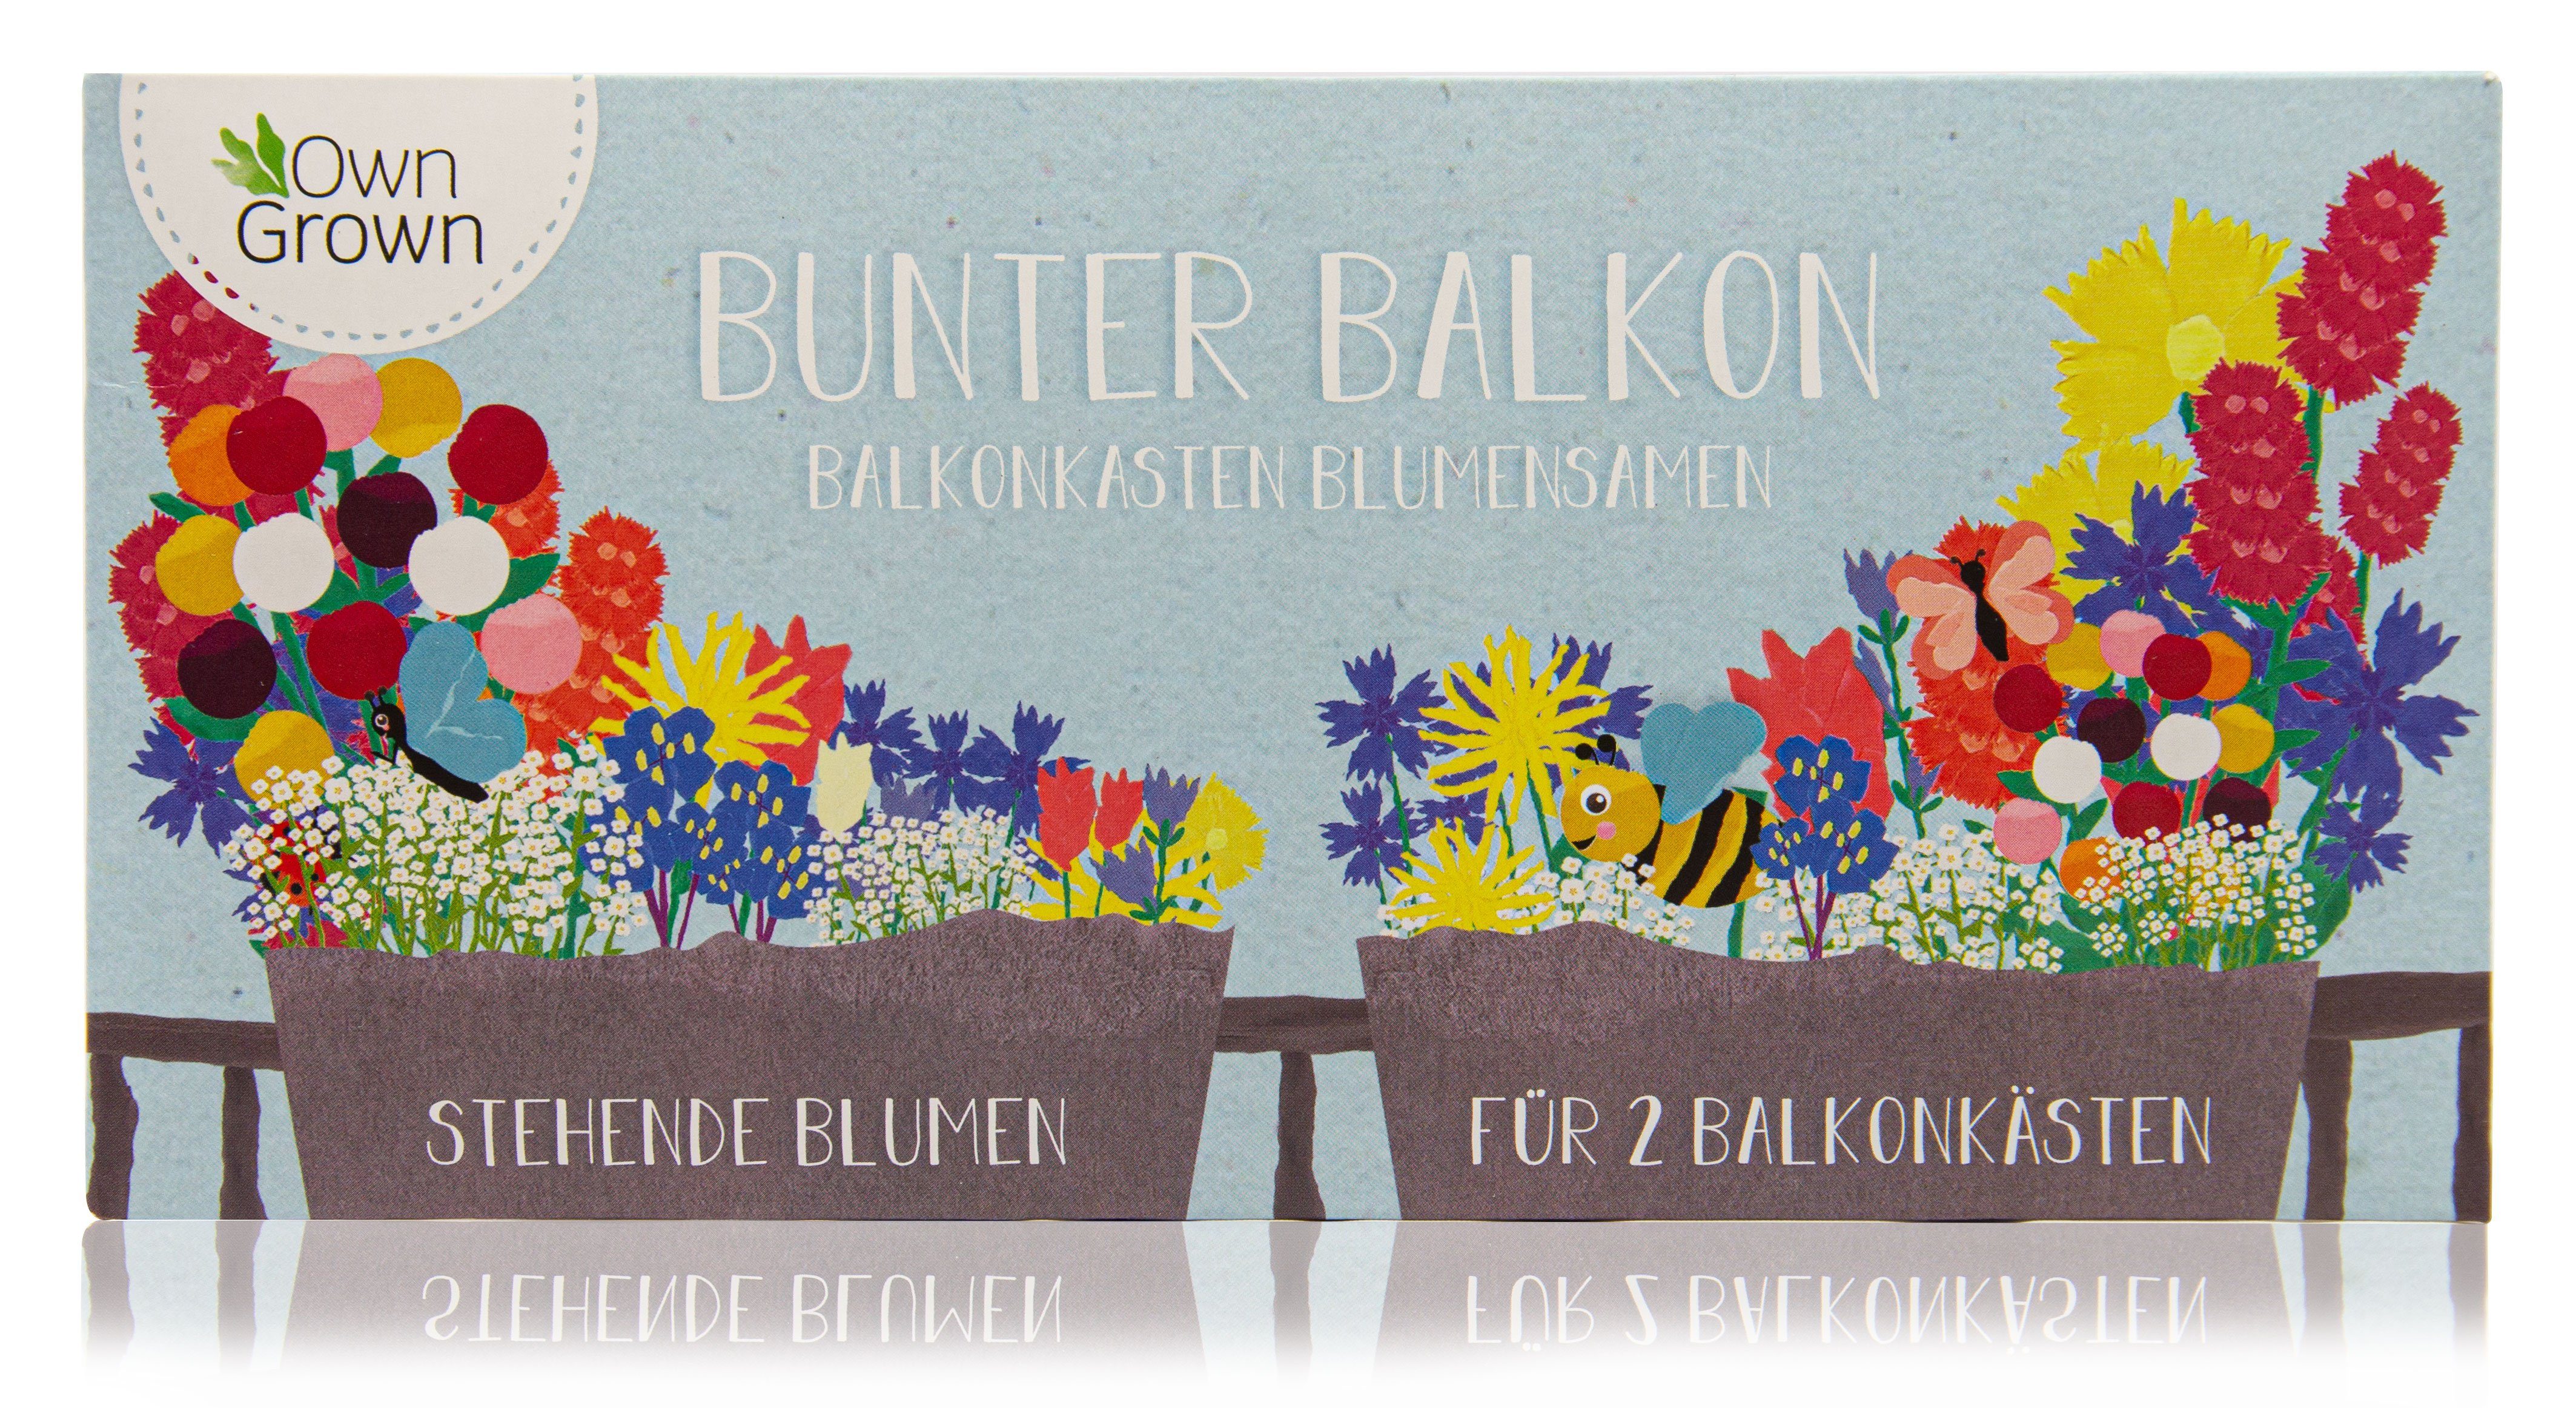 OwnGrown Blumenkasten »Bunter Balkon - Balkonkasten Blumensamen Mischung -  stehende Blumen für 2 Kästen« online kaufen | OTTO